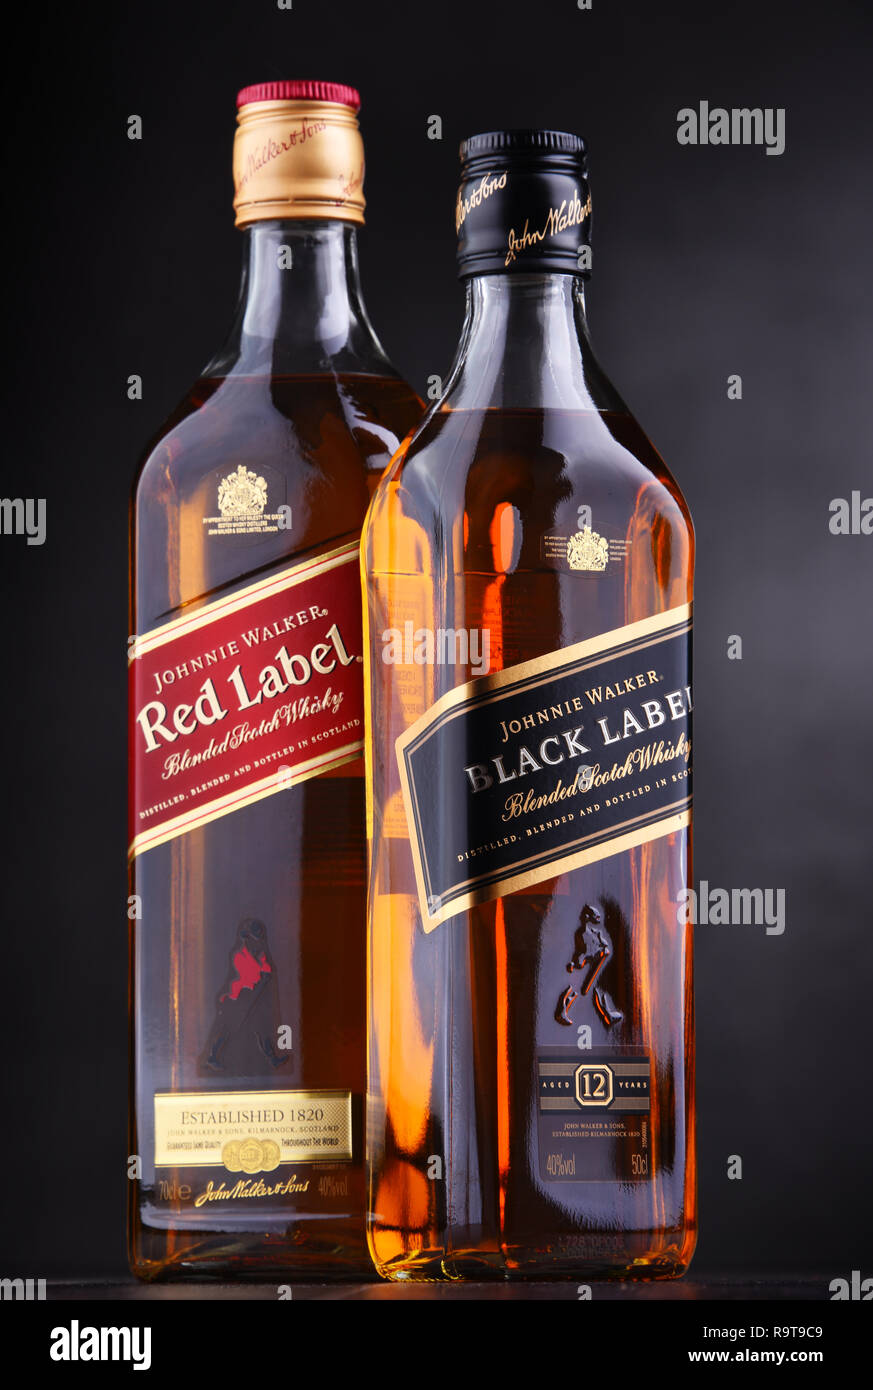 POZNAN, POL - 15.November 2018: Flaschen Johnnie Walker, der am weitesten verbreiteten Marke von Blended Scotch Whisky in der Welt mit einem Umsatz von über 130 Stockfoto